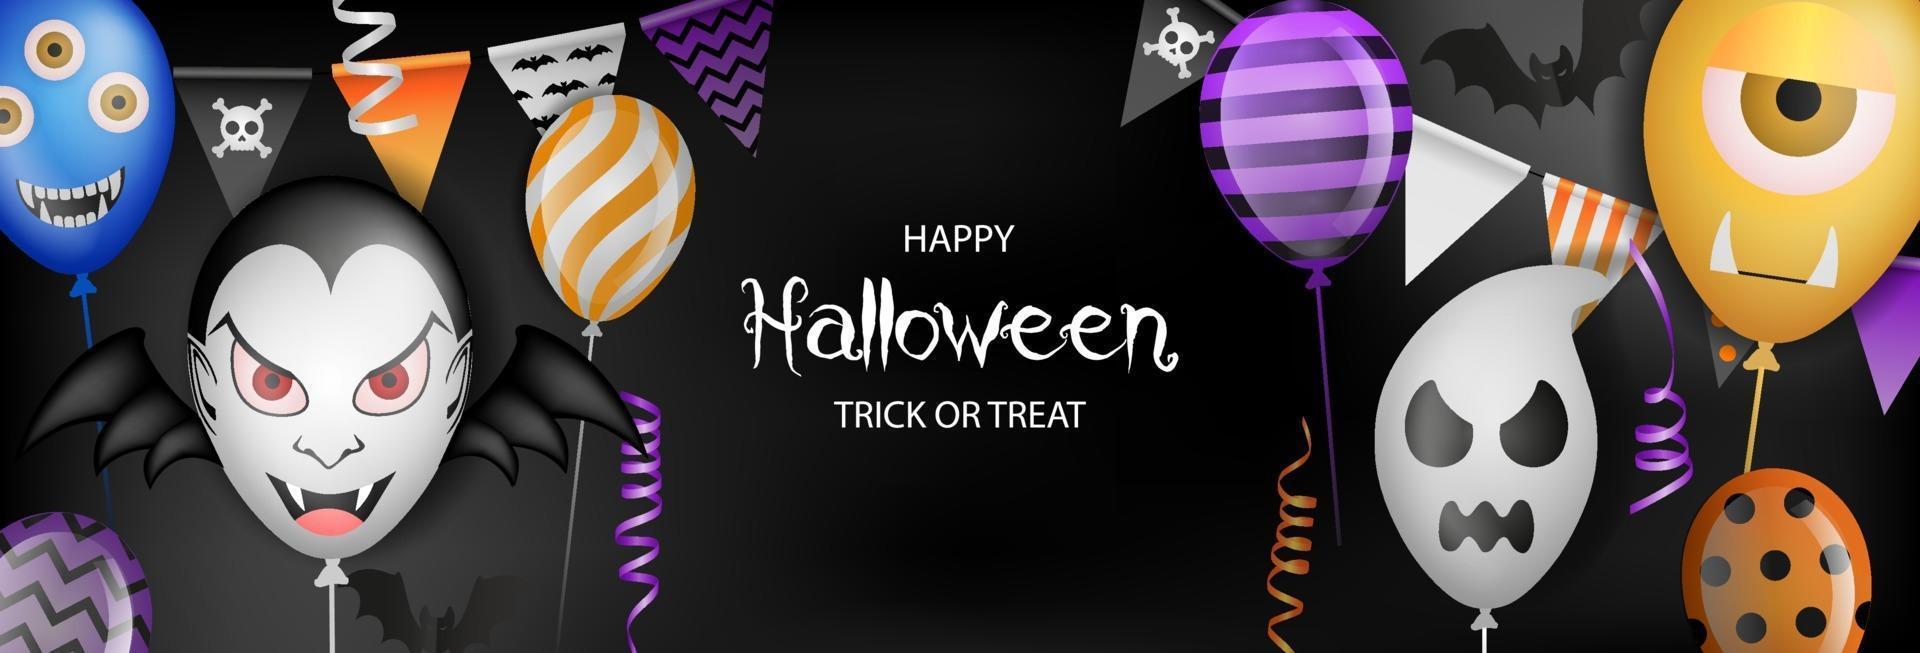 happy halloween-banner met feestballonnen, wimpels en slingers vector